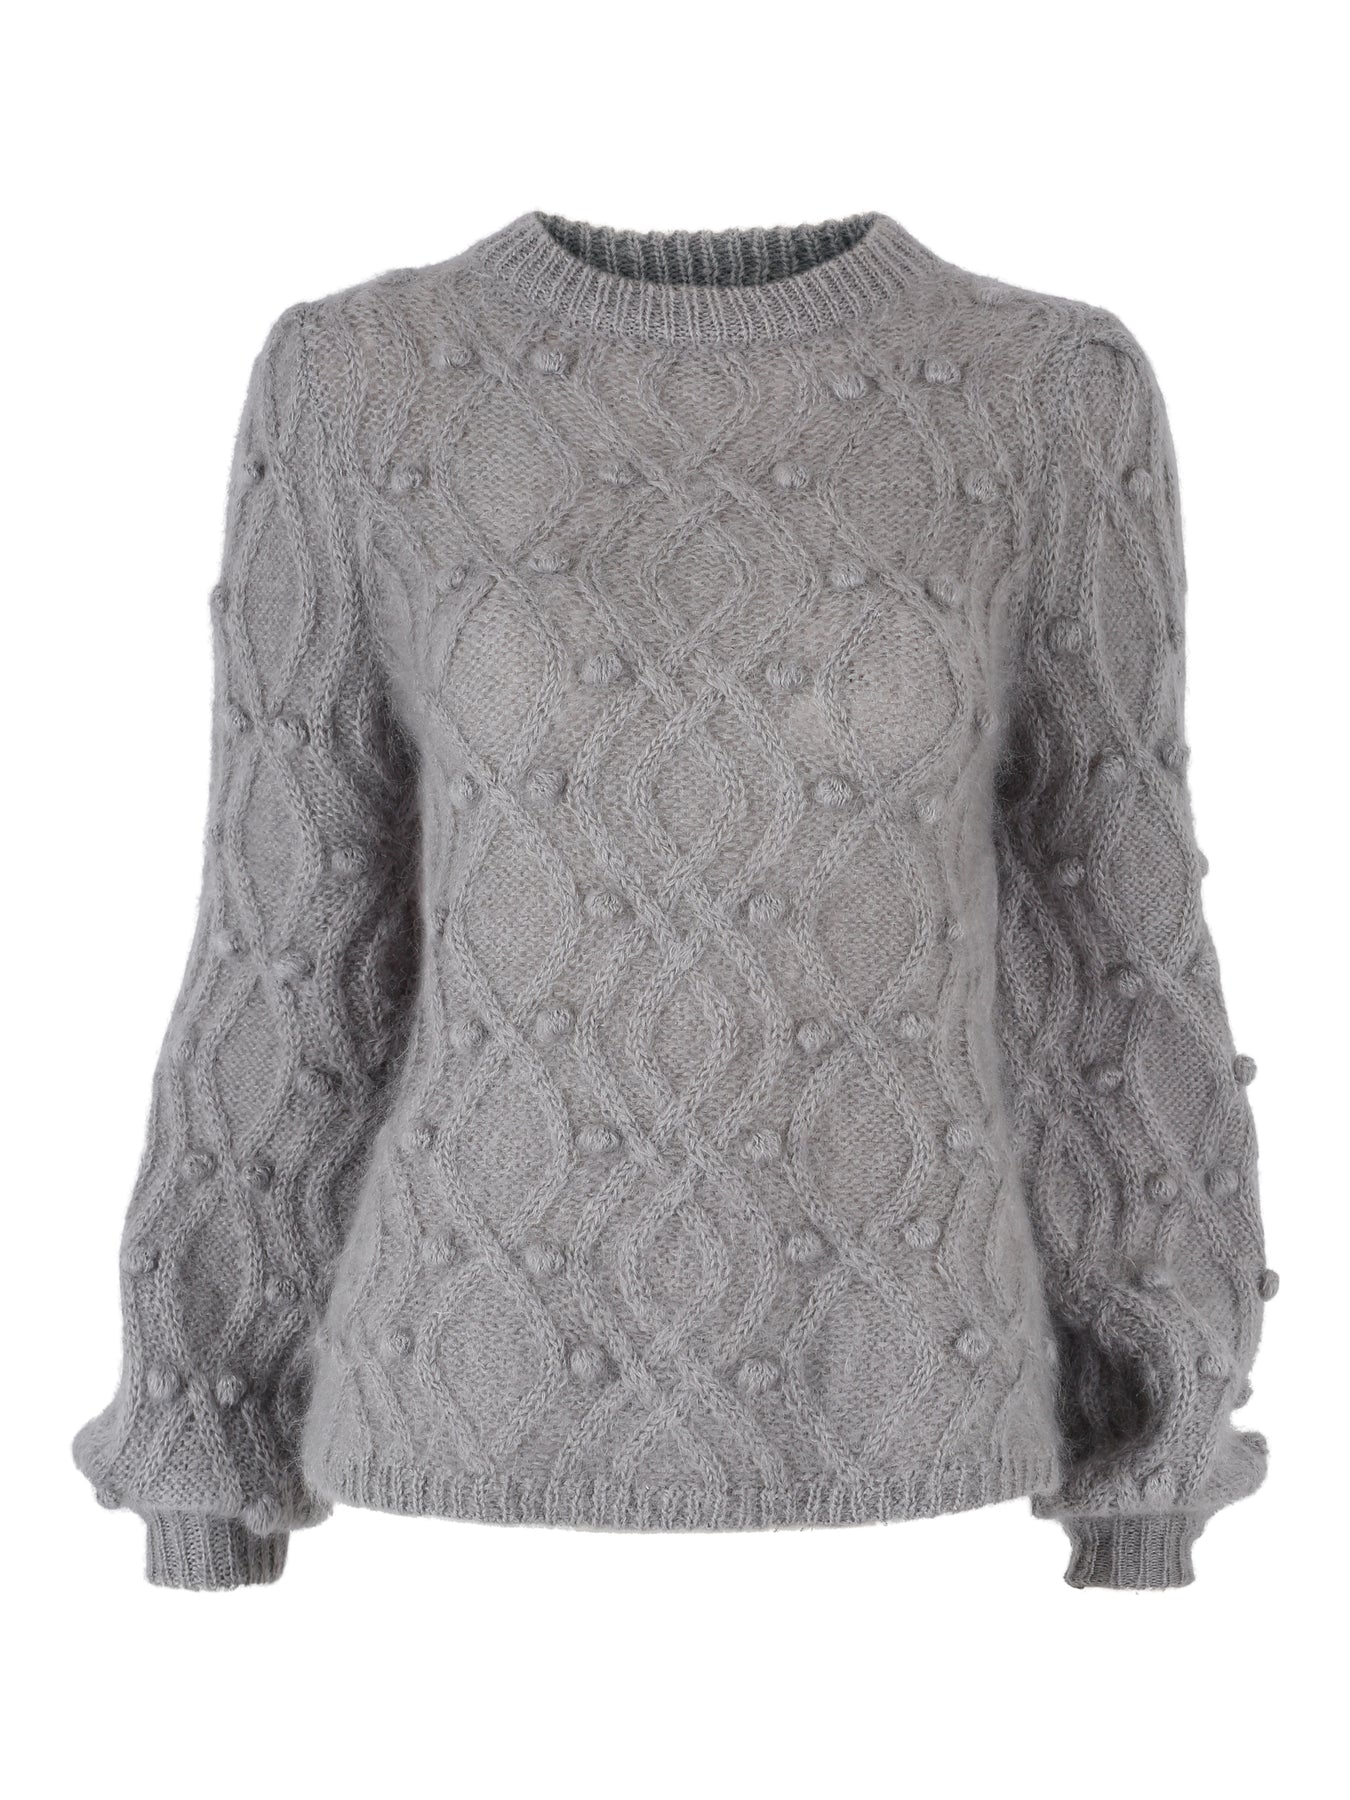 Andrea Chunky Knit Sweater - Grey - Ella & il - Gensere - VILLOID.no